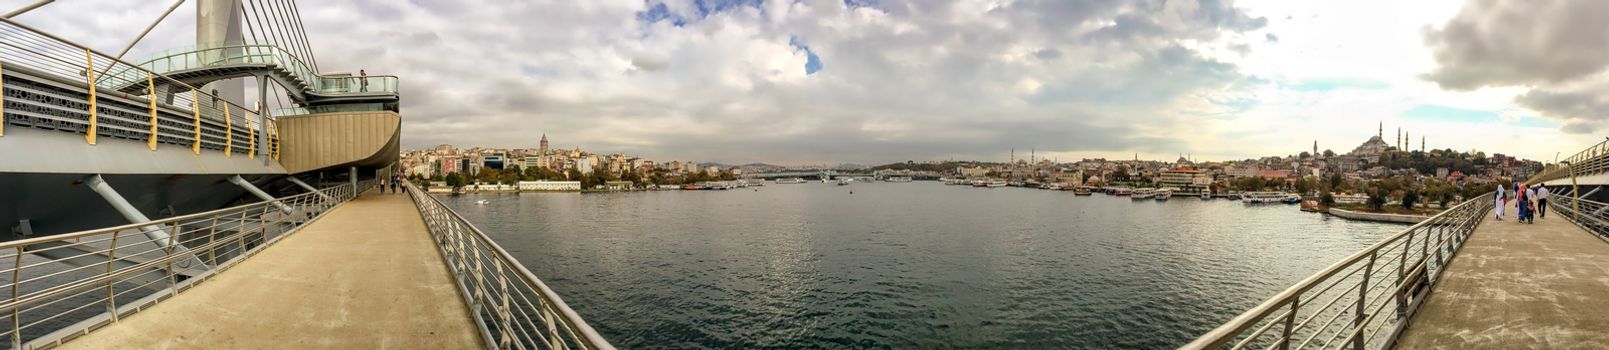 Istanbul. Panoramic view from New Galata Bridge.